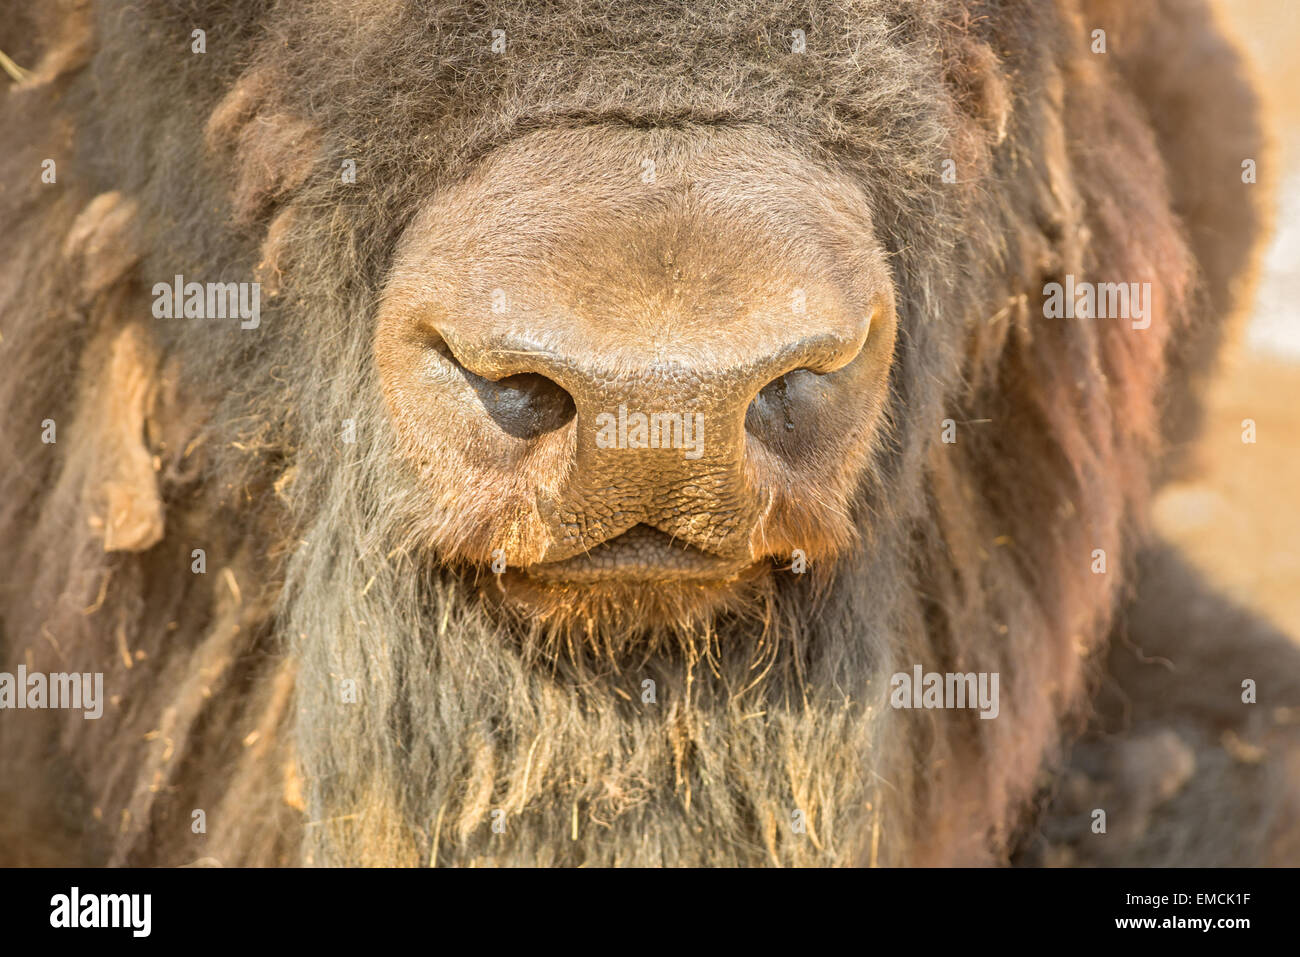 Nez de bison close-up Banque D'Images